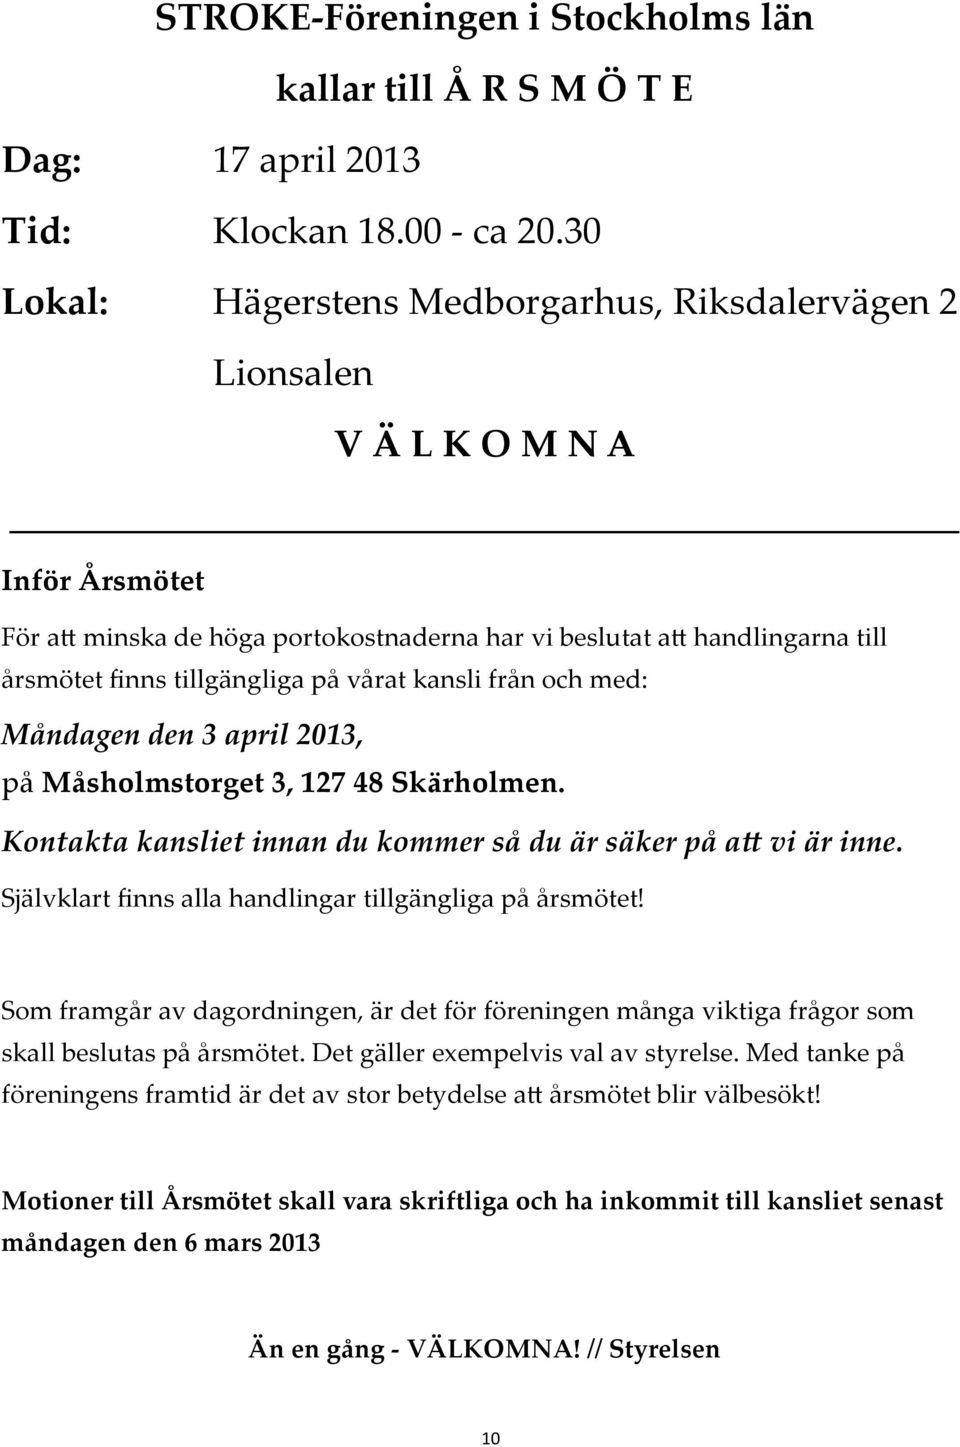 vårat kansli från och med: Måndagen den 3 april 2013, på Måsholmstorget 3, 127 48 Skärholmen. Kontakta kansliet innan du kommer så du är säker på a vi är inne.